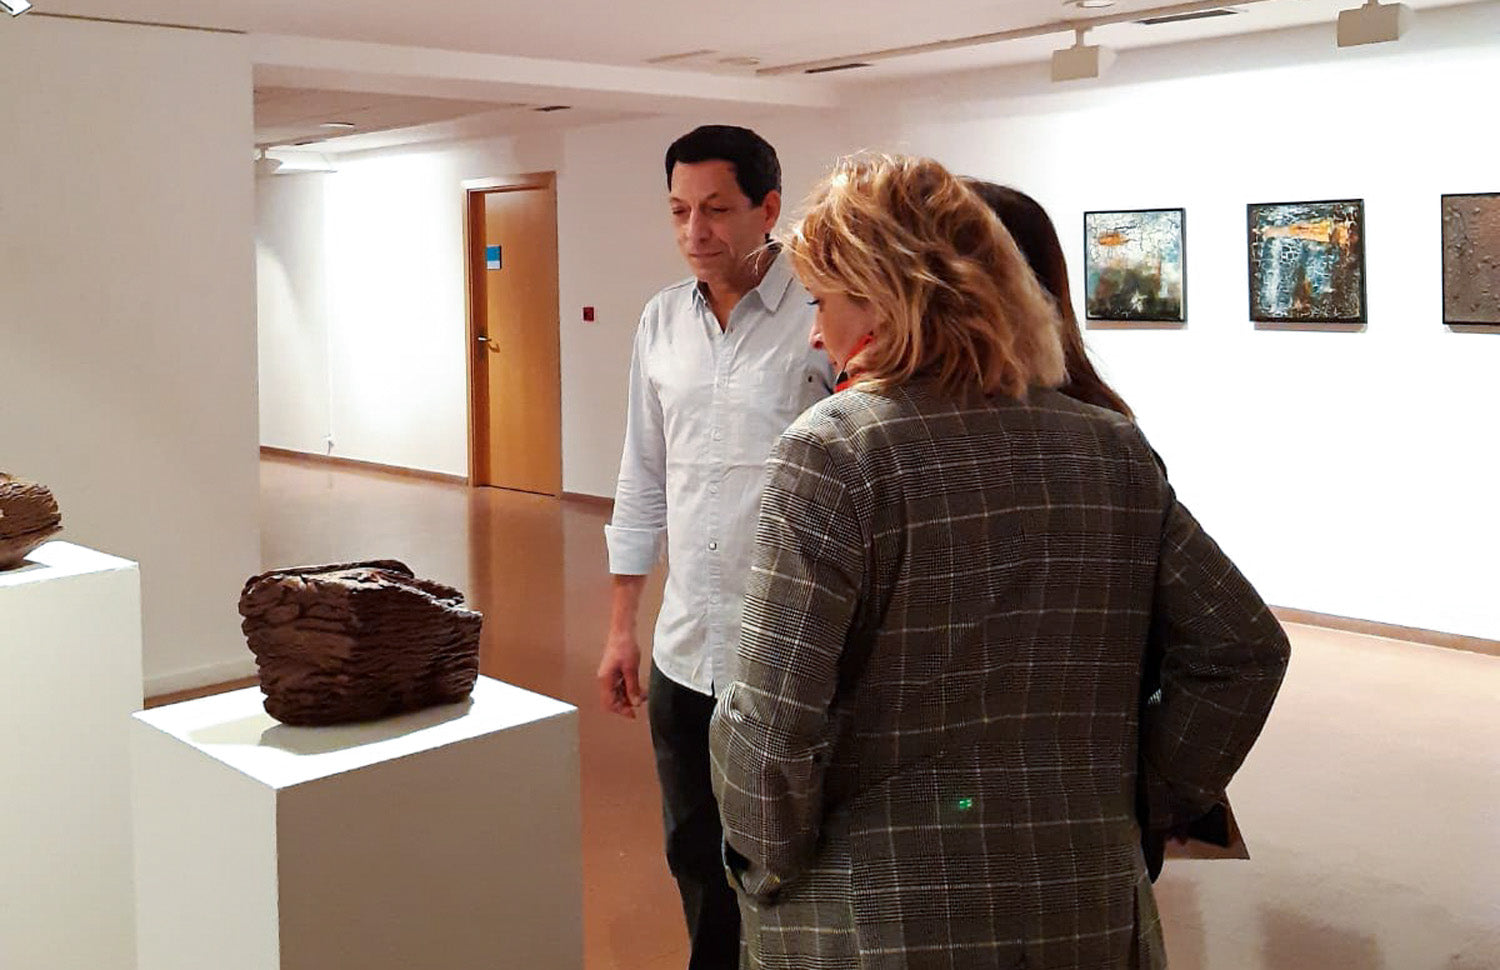 João Carqueijeiro Solo Exhibition at CMAE Avilés